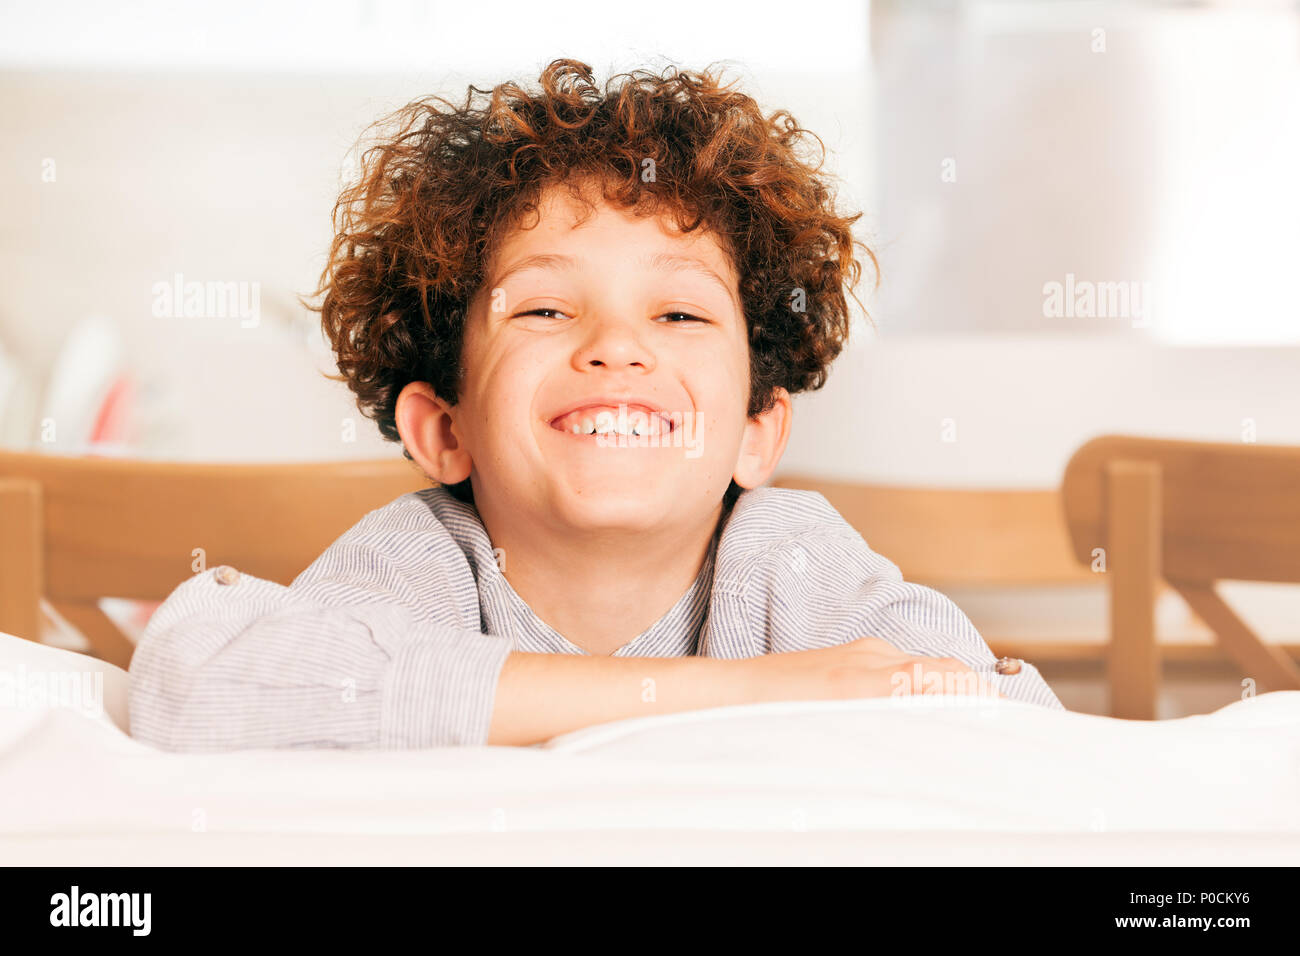 Portrait von niedlichen kleinen Jungen mit dem lockigen Haar auf dem Sofa sitzend, lachend und mit Blick auf die Kamera Stockfoto